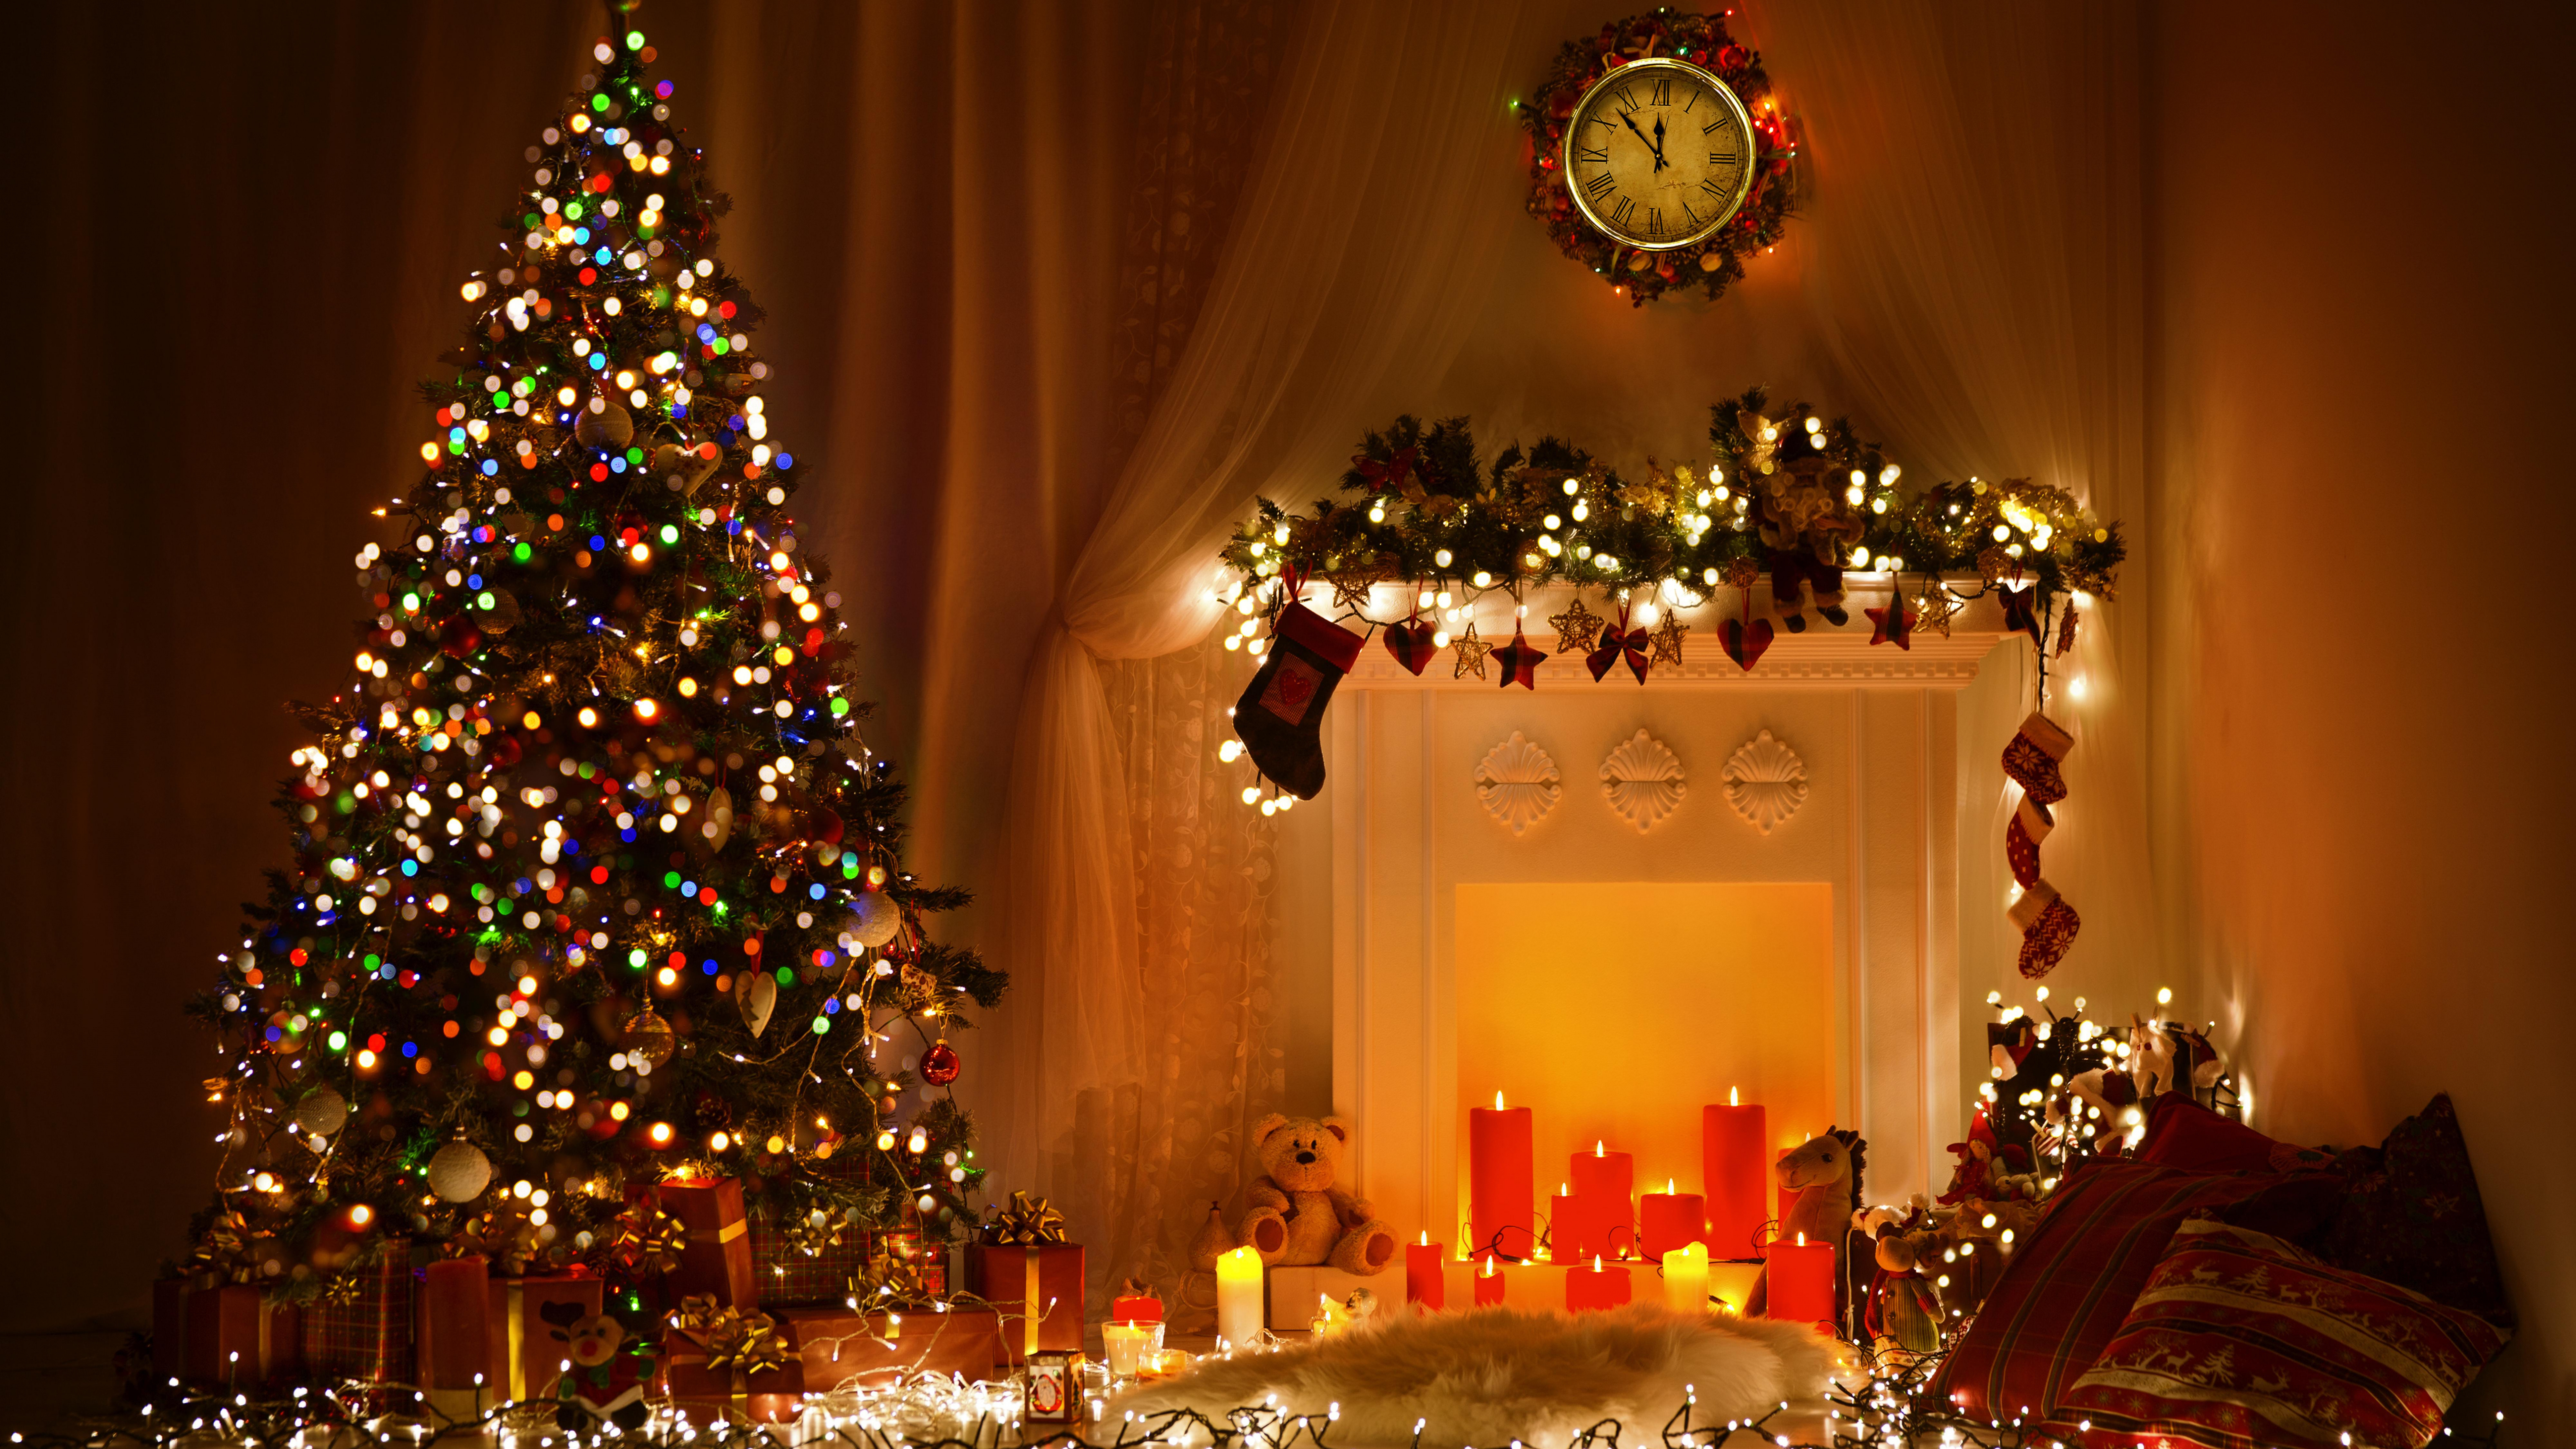 圣诞节那天, 圣诞树, 圣诞彩灯, 圣诞装饰, 假日 壁纸 7680x4320 允许